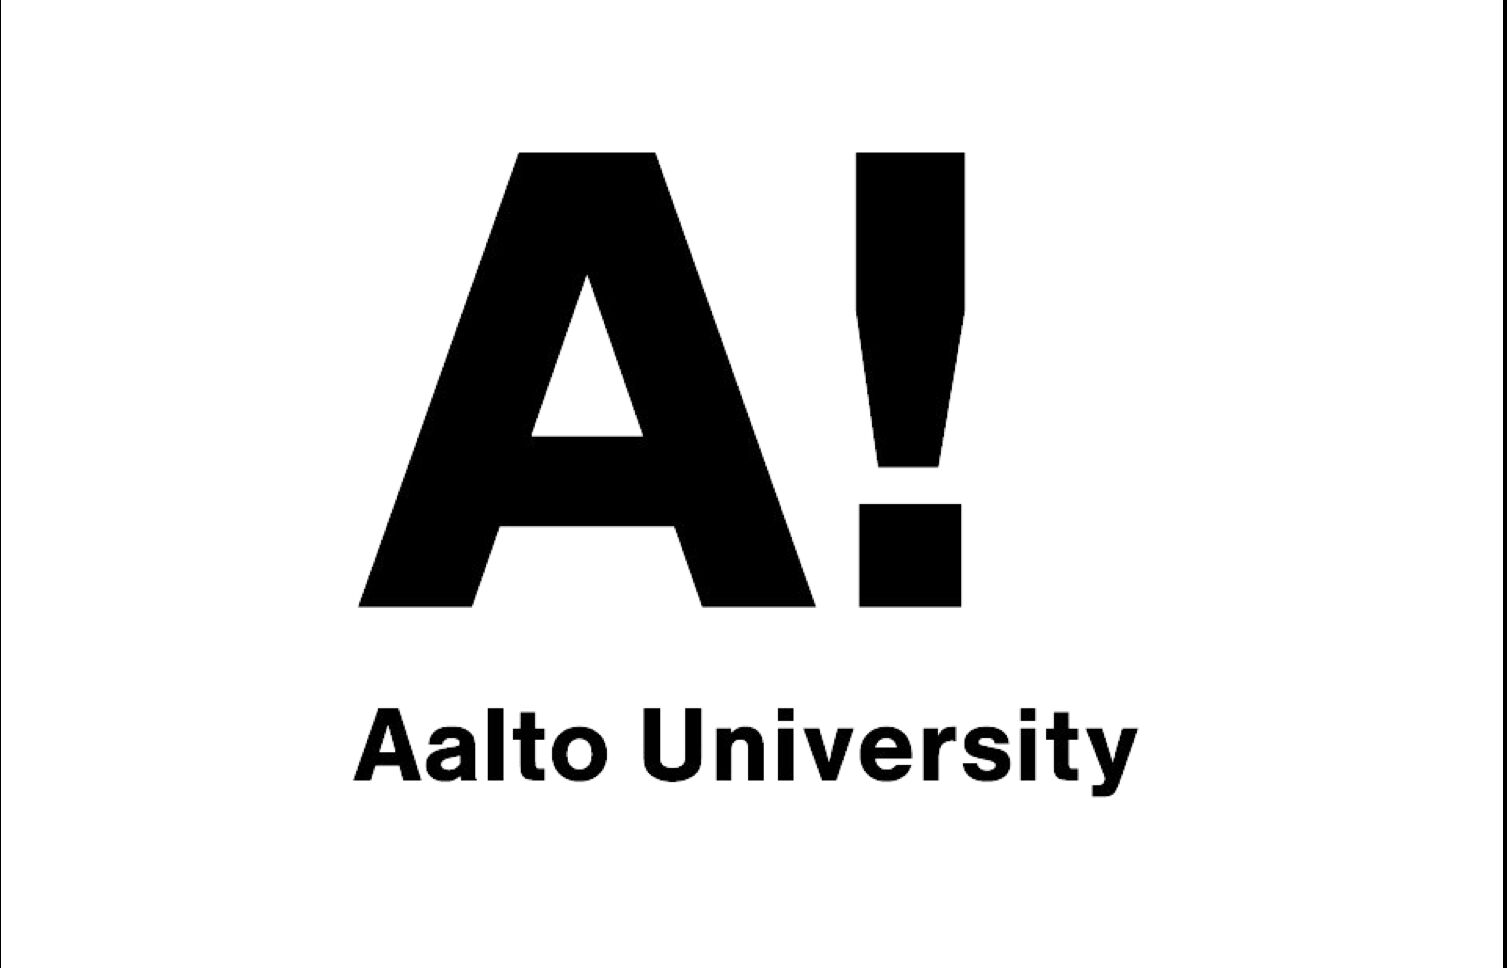 Aalto university